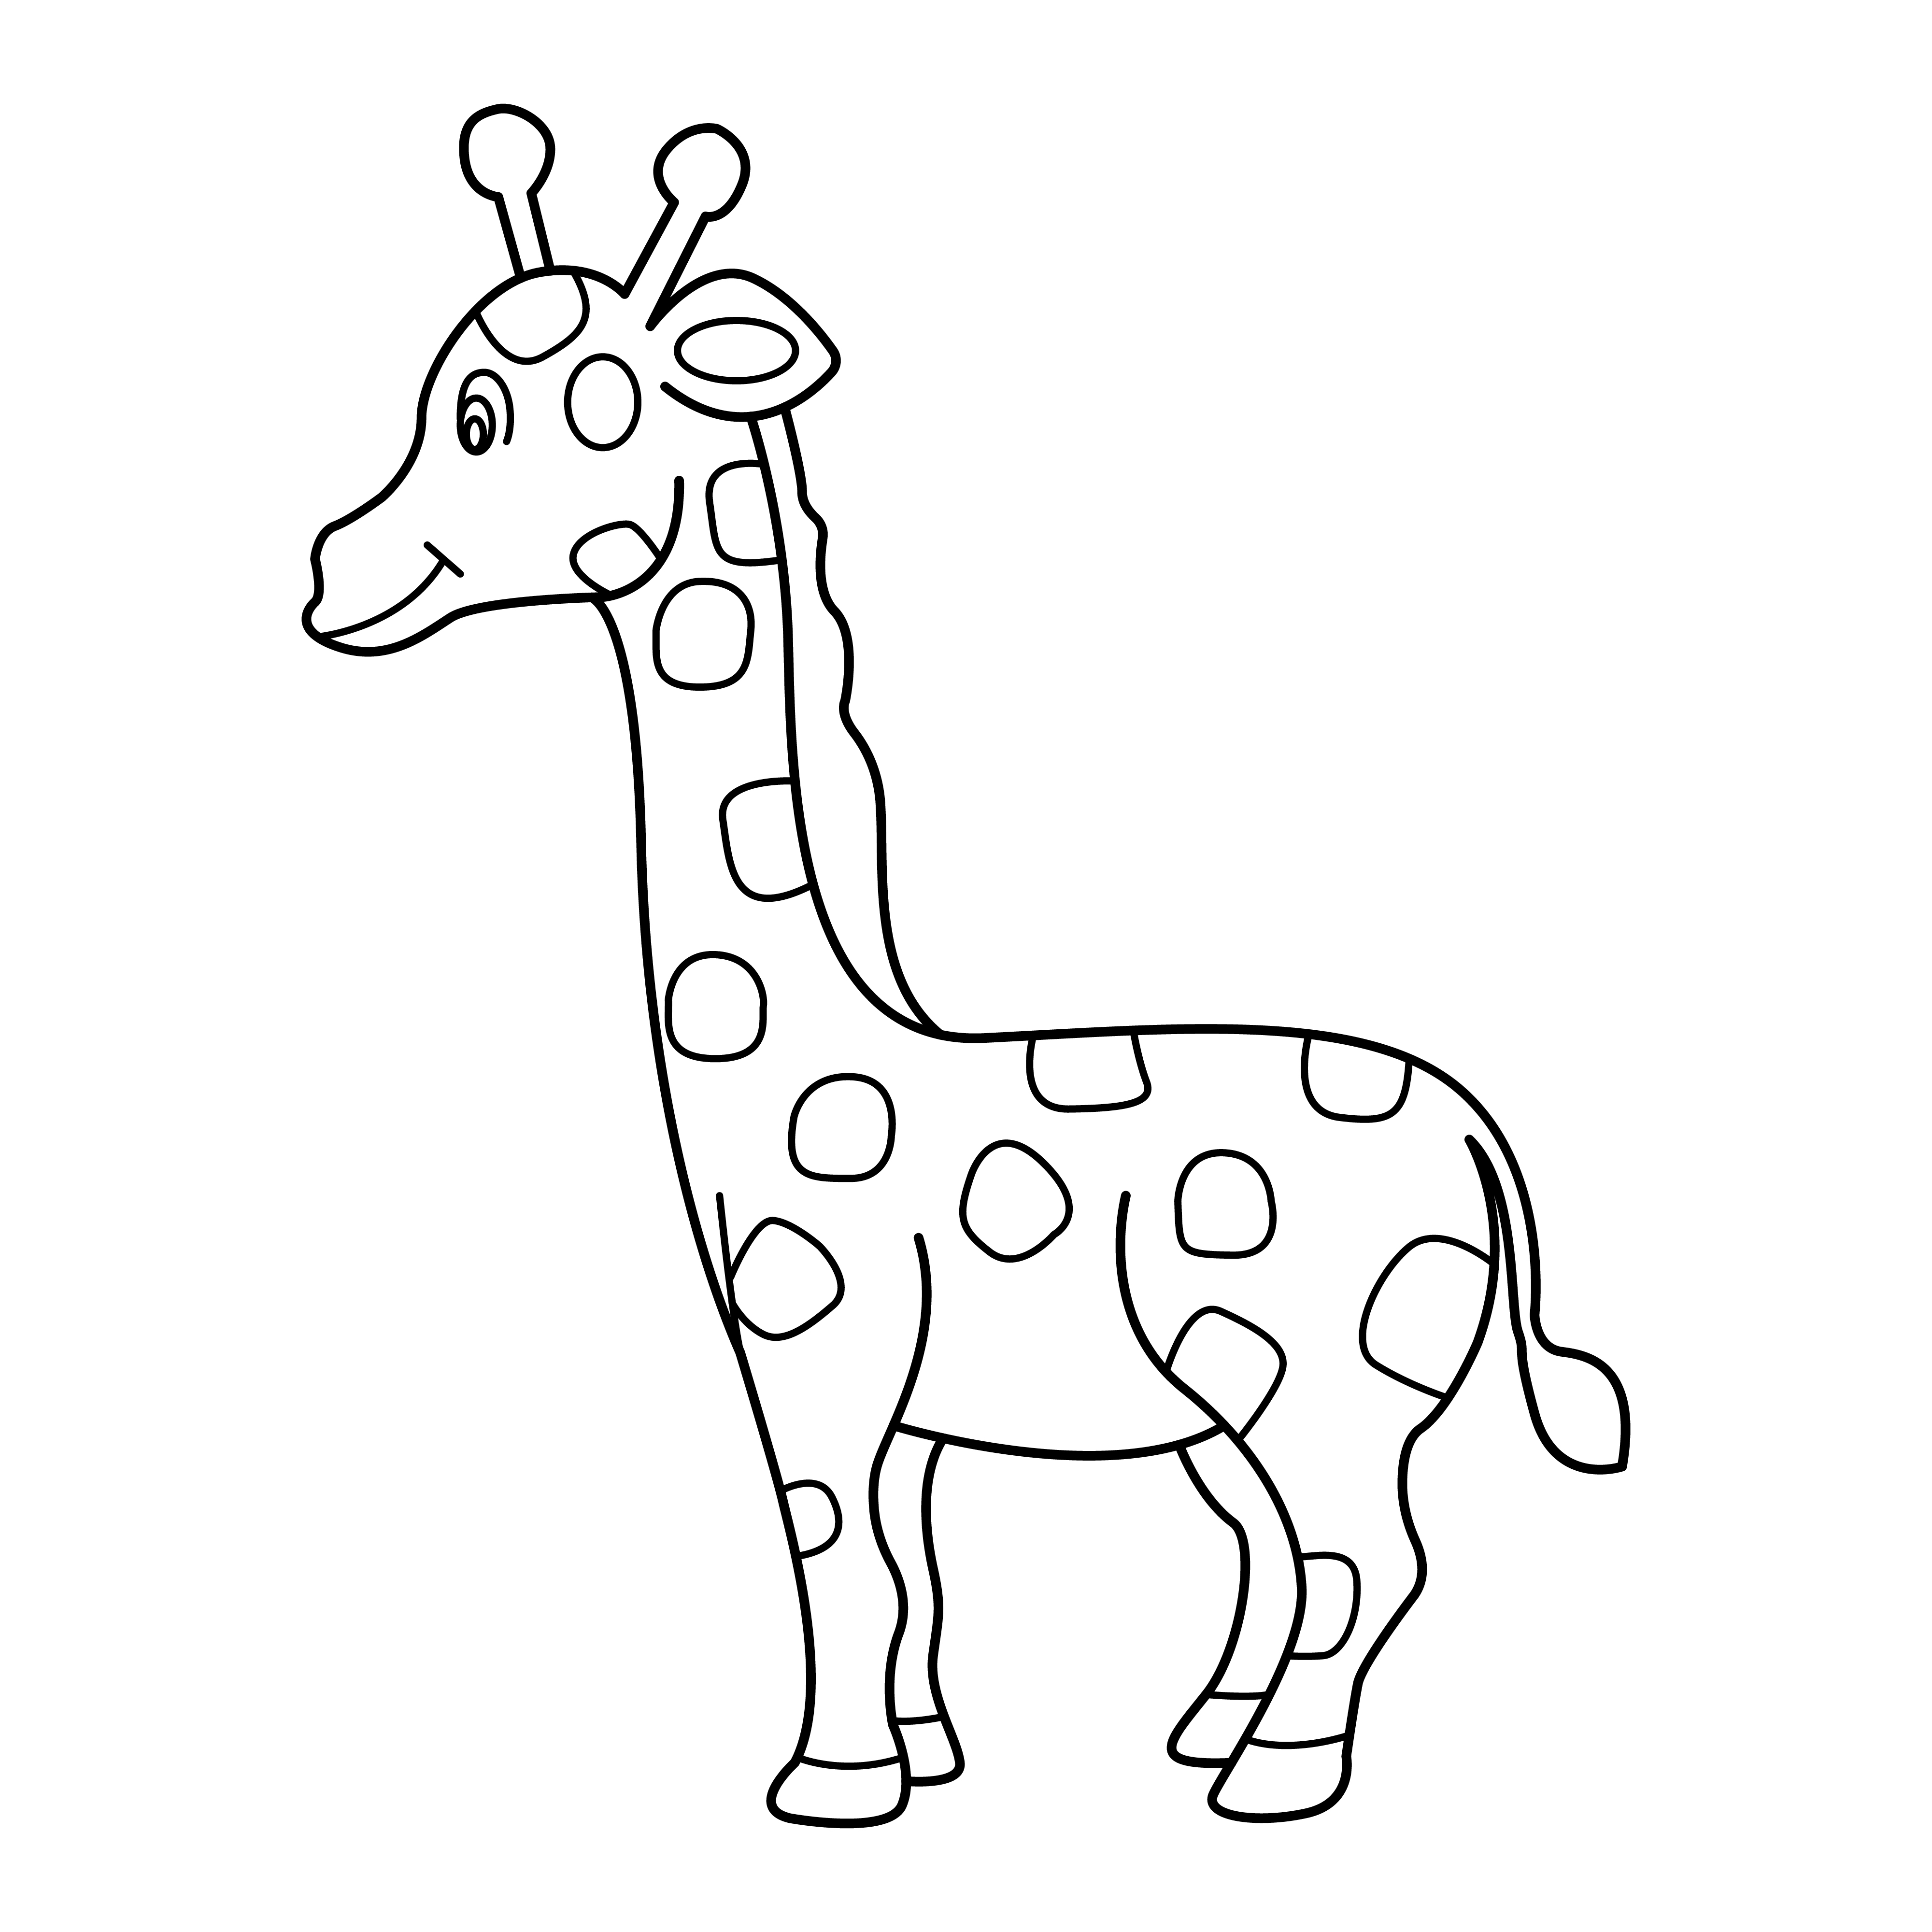 Раскраска ребенок жираф формата А4 в высоком качестве